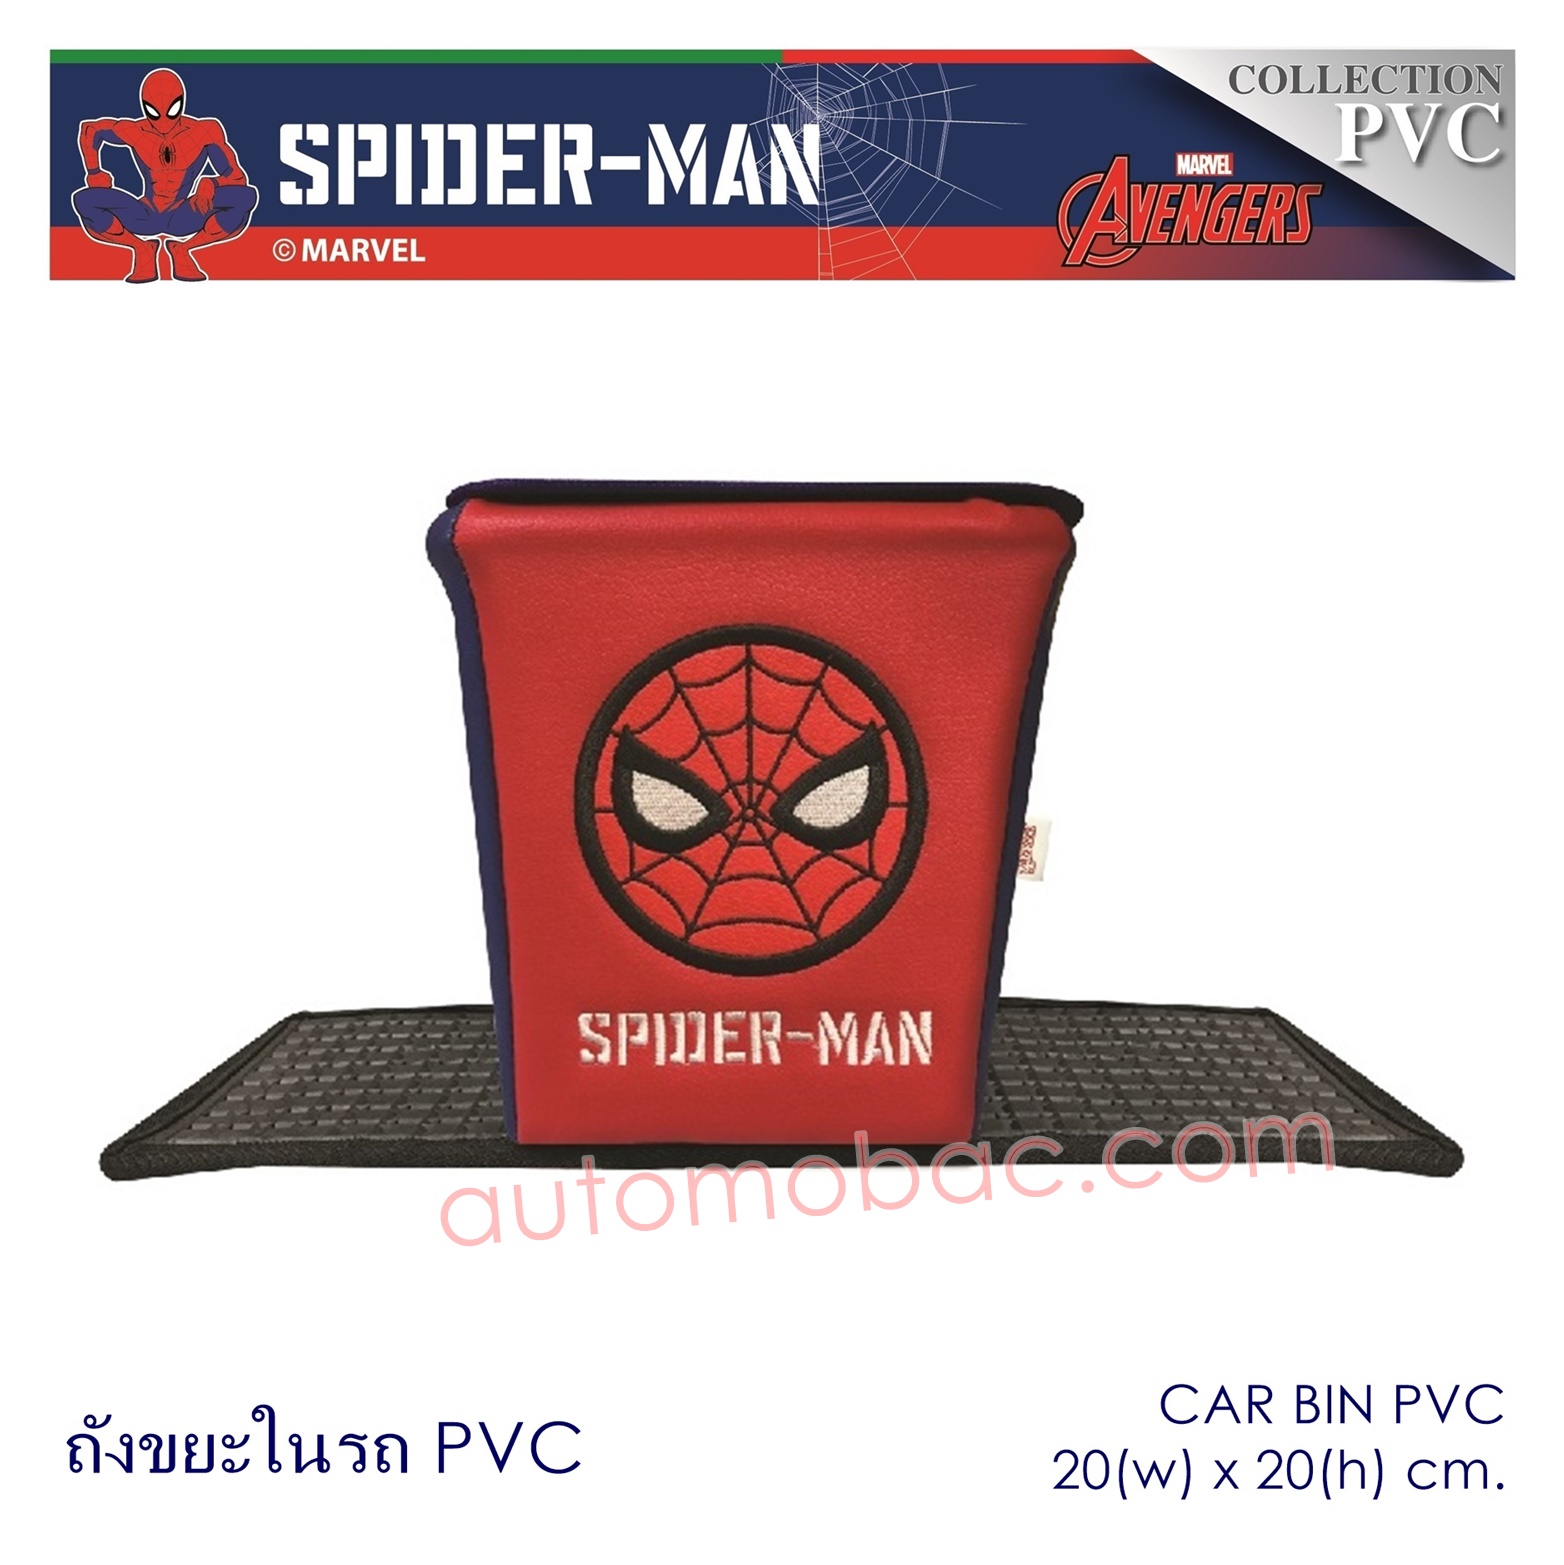 Spider-man ถังขยะในรถ PVC ด้านนอกผลิตจาก PVC เกรด A มีแผ่นยางพลาสติก กันลื่น ทำความสะอาดง่าย